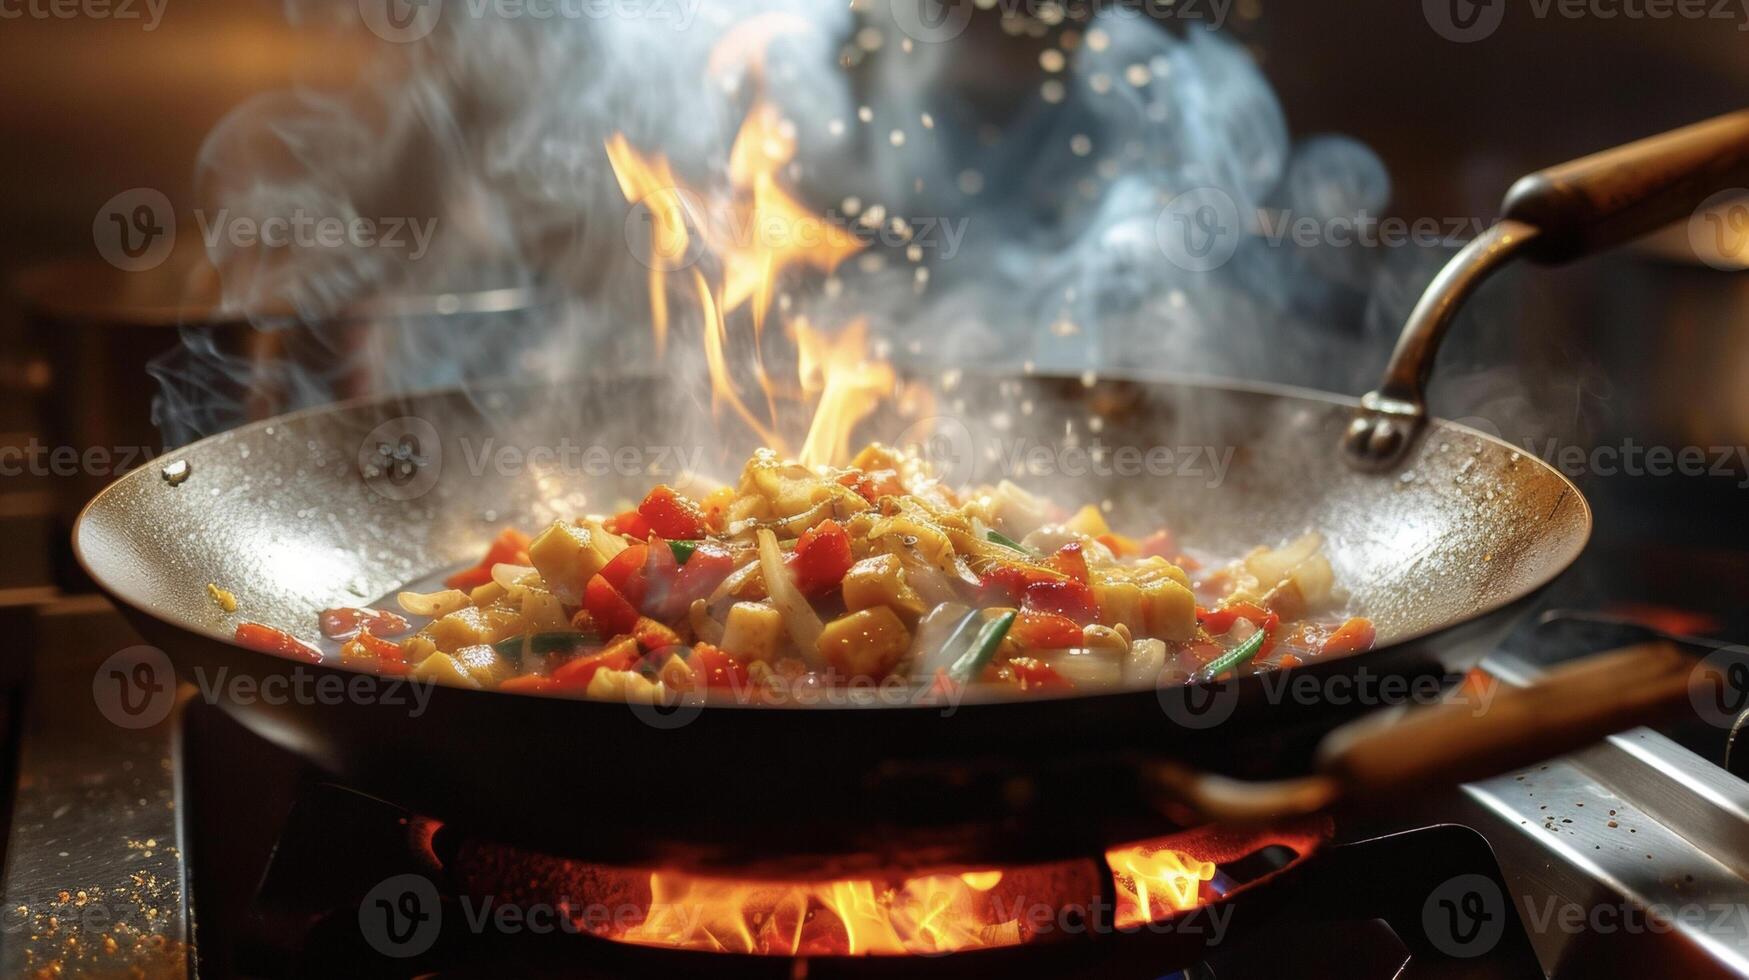 stoom- stijgende lijn en vlammen laaiend deze wok roerbak is een meesterwerk in de maken. de geluid van sissend olie en de rinkelend van metaal tegen de wok creëren een symfonie van smaken foto